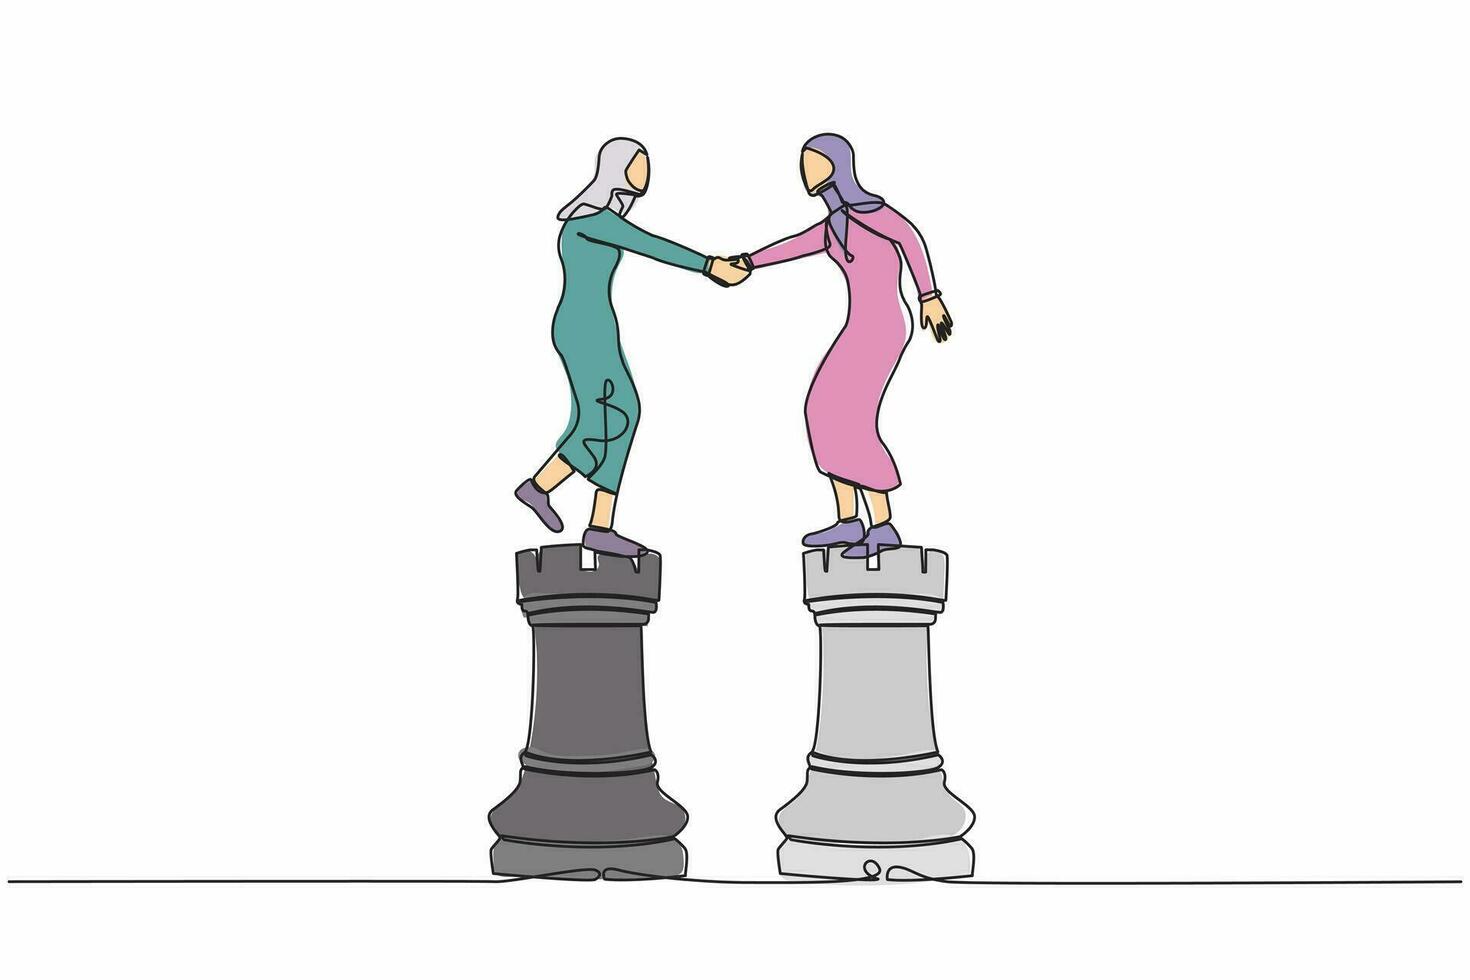 soltero continuo línea dibujo árabe mujer de negocios sacudida mano en torre ajedrez. negociación habilidad a acuerdo con competidor, acuerdo metáfora, camaradería decisión. uno línea diseño vector ilustración